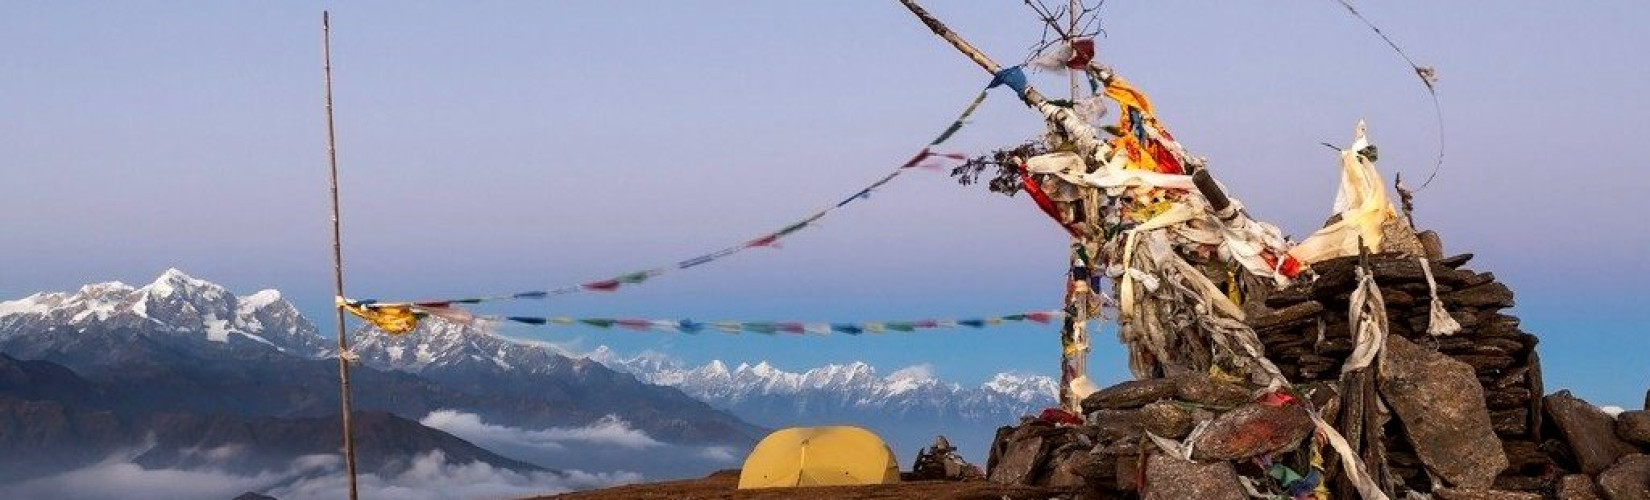 Camping Destinations Near Kathmandu Valley